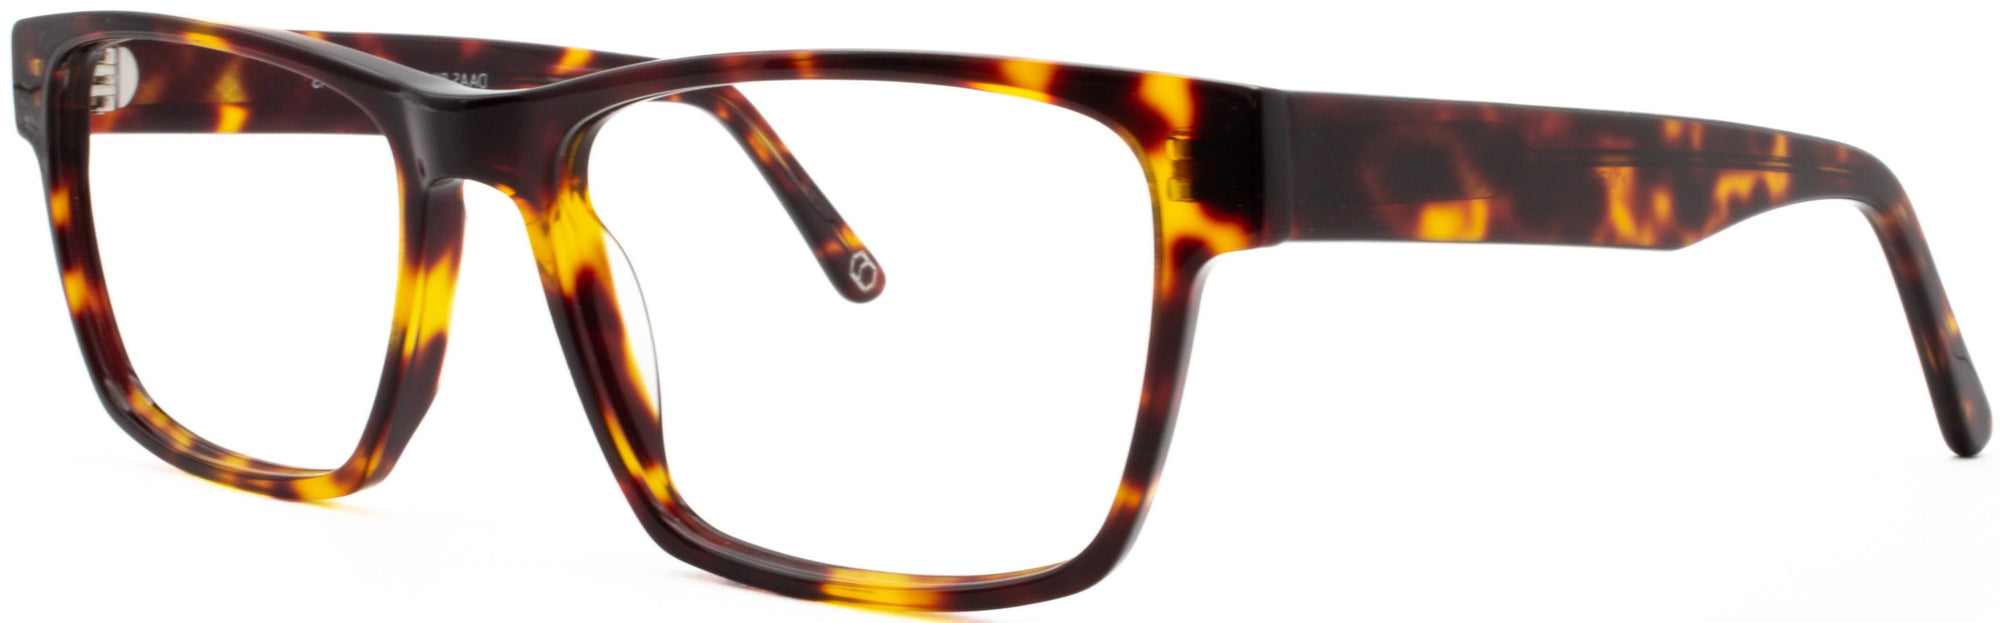 Alexander Daas - Remy Eyeglasses - Light Tortoise - Side View